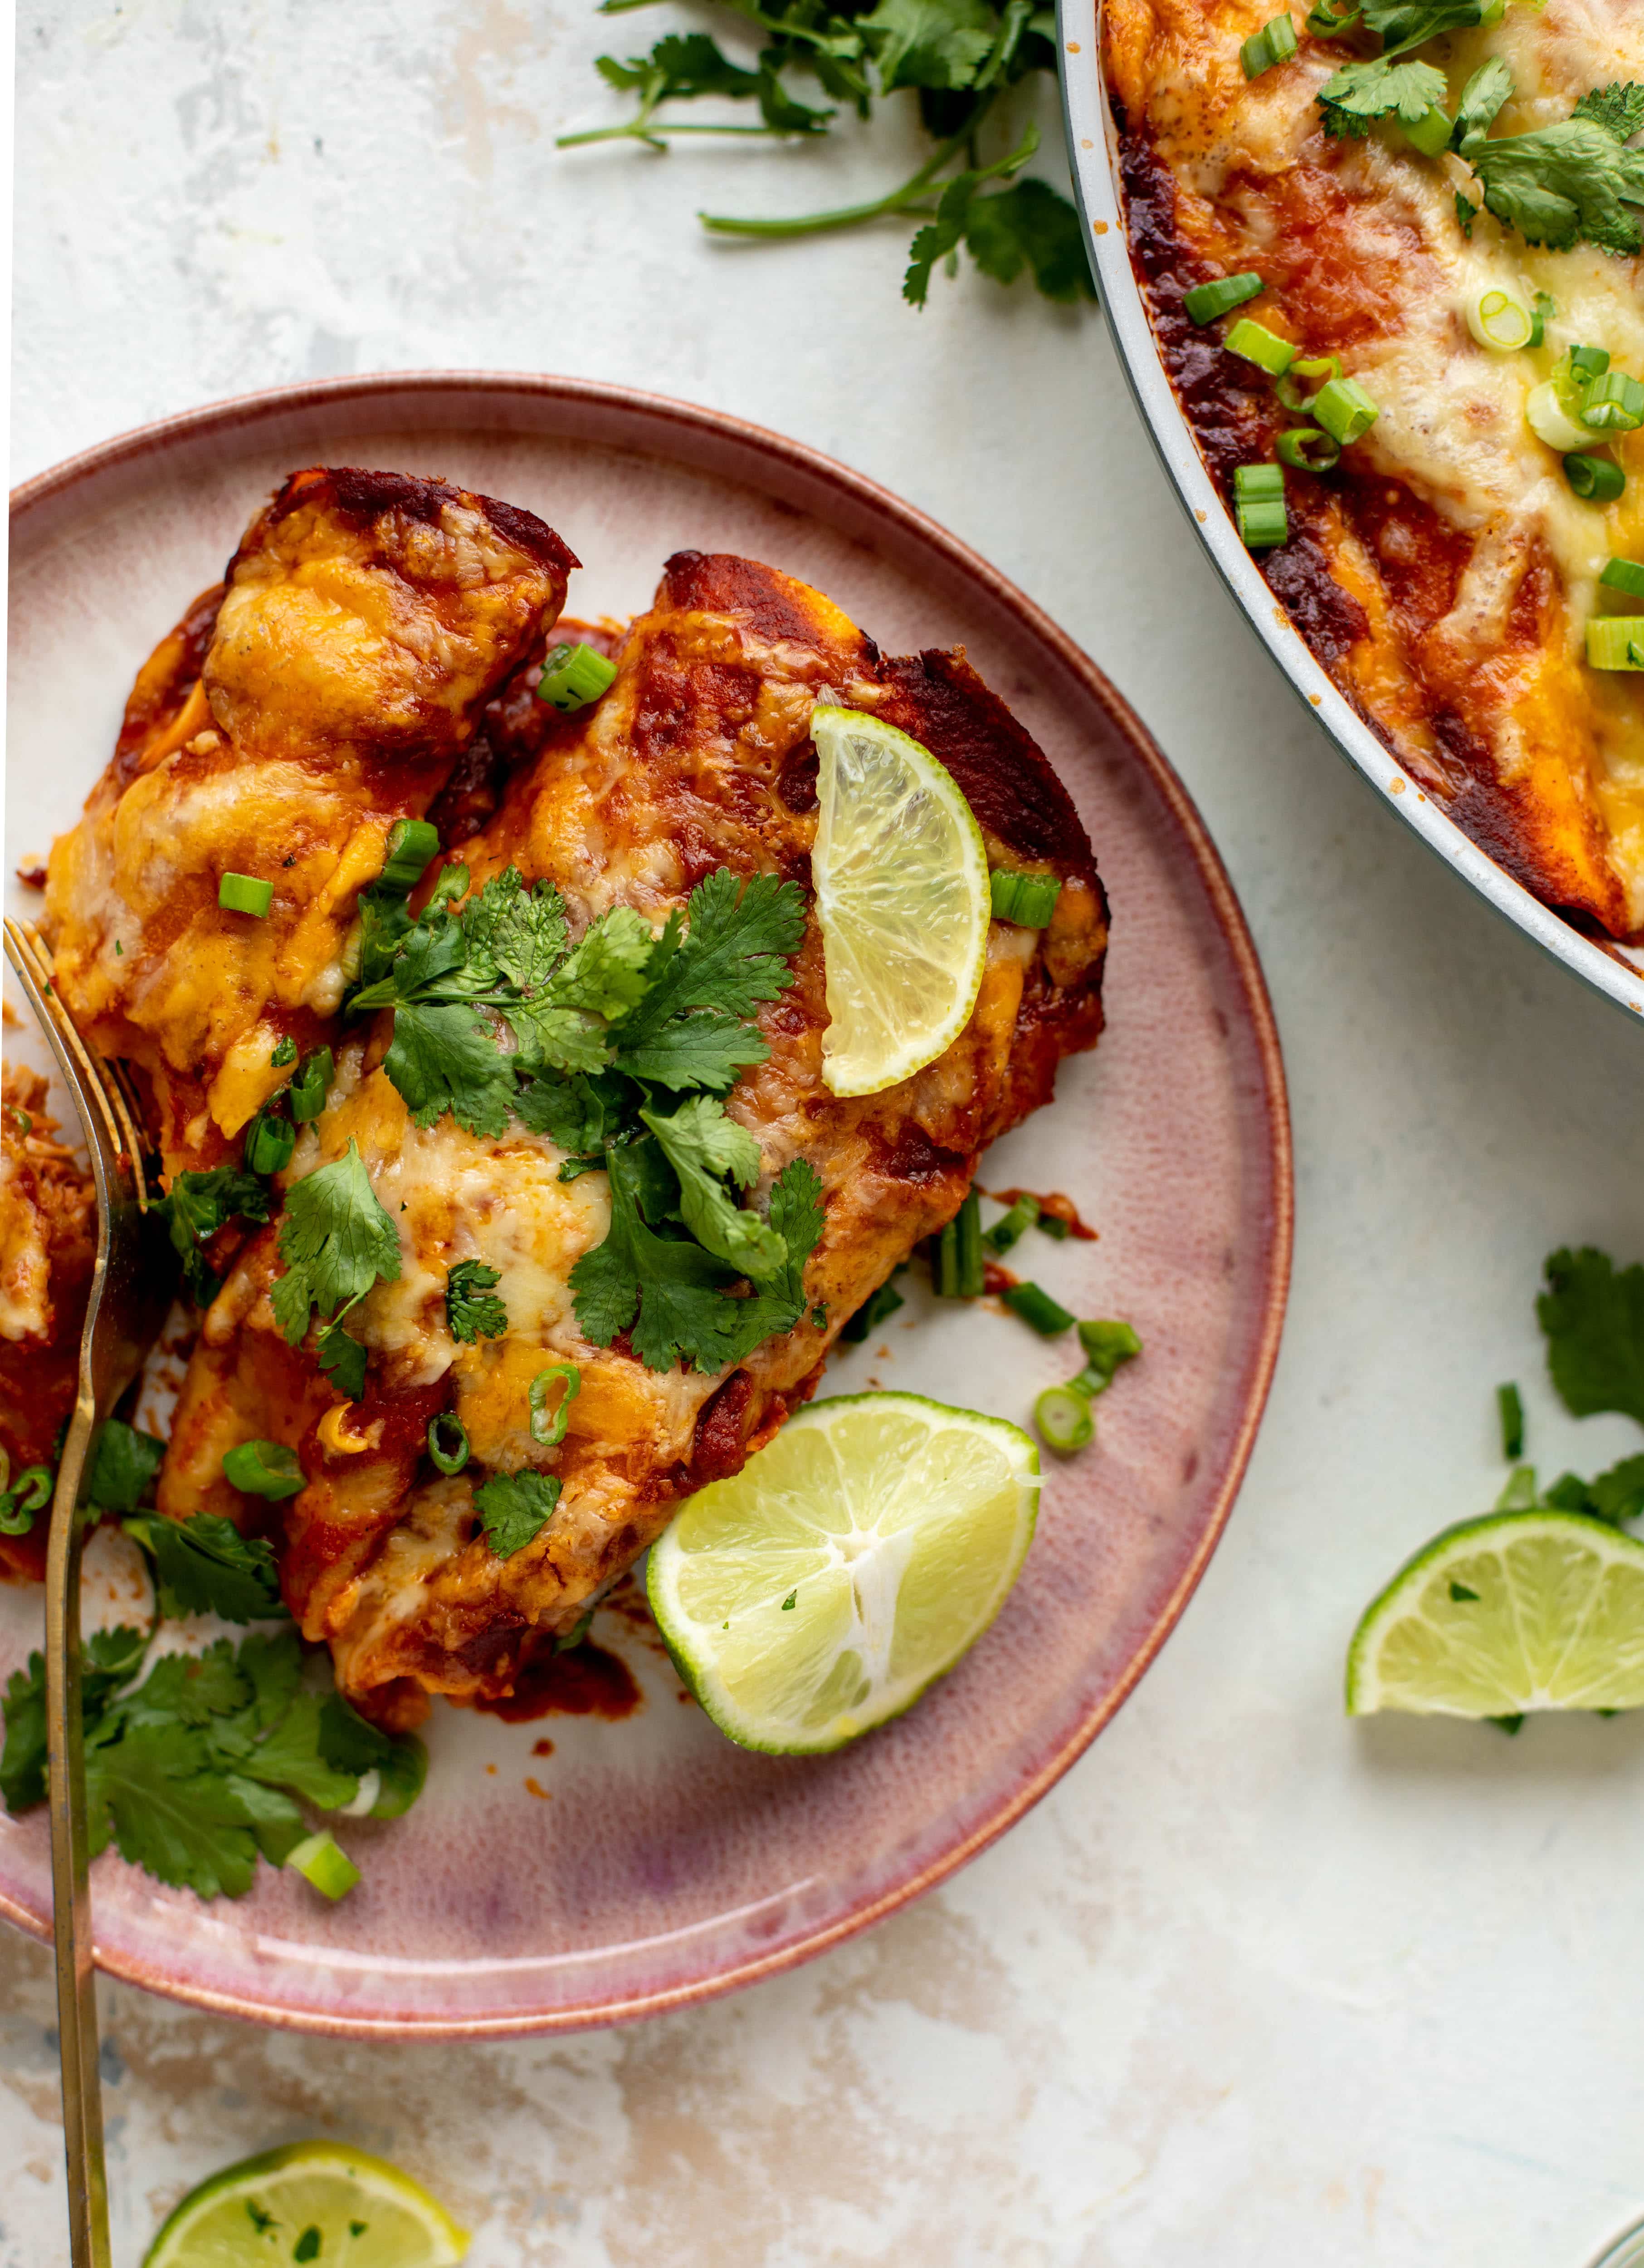 Chipotle chicken patelnia enchiladas są ładowane ze smakiem i łączą się tak szybko! Są idealnym pikantnym posiłkiem w tygodniu.